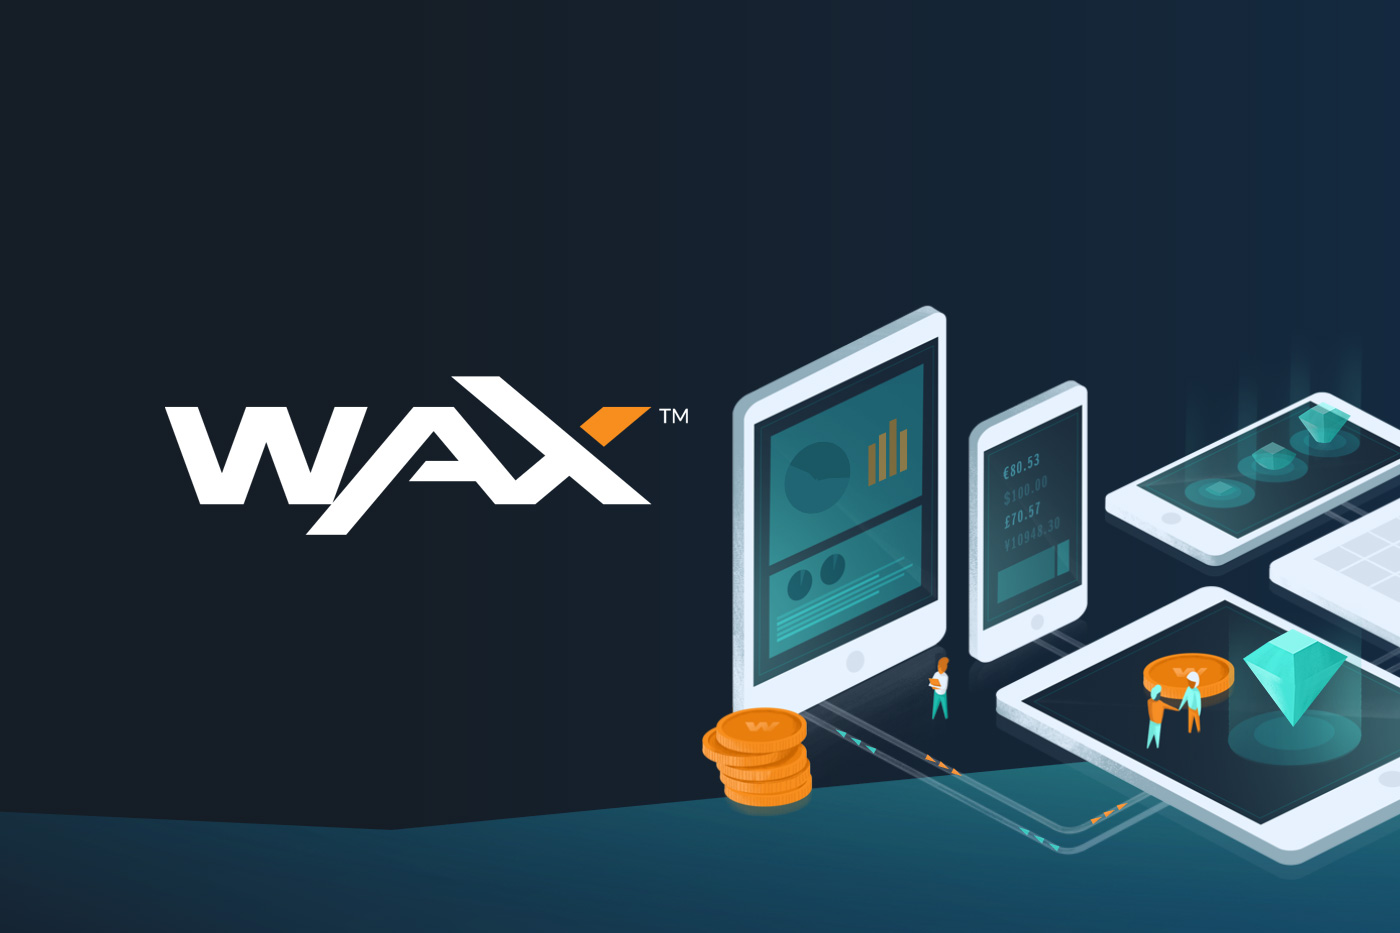 راهنمای WAX eXchange دارایی در سراسر جهان